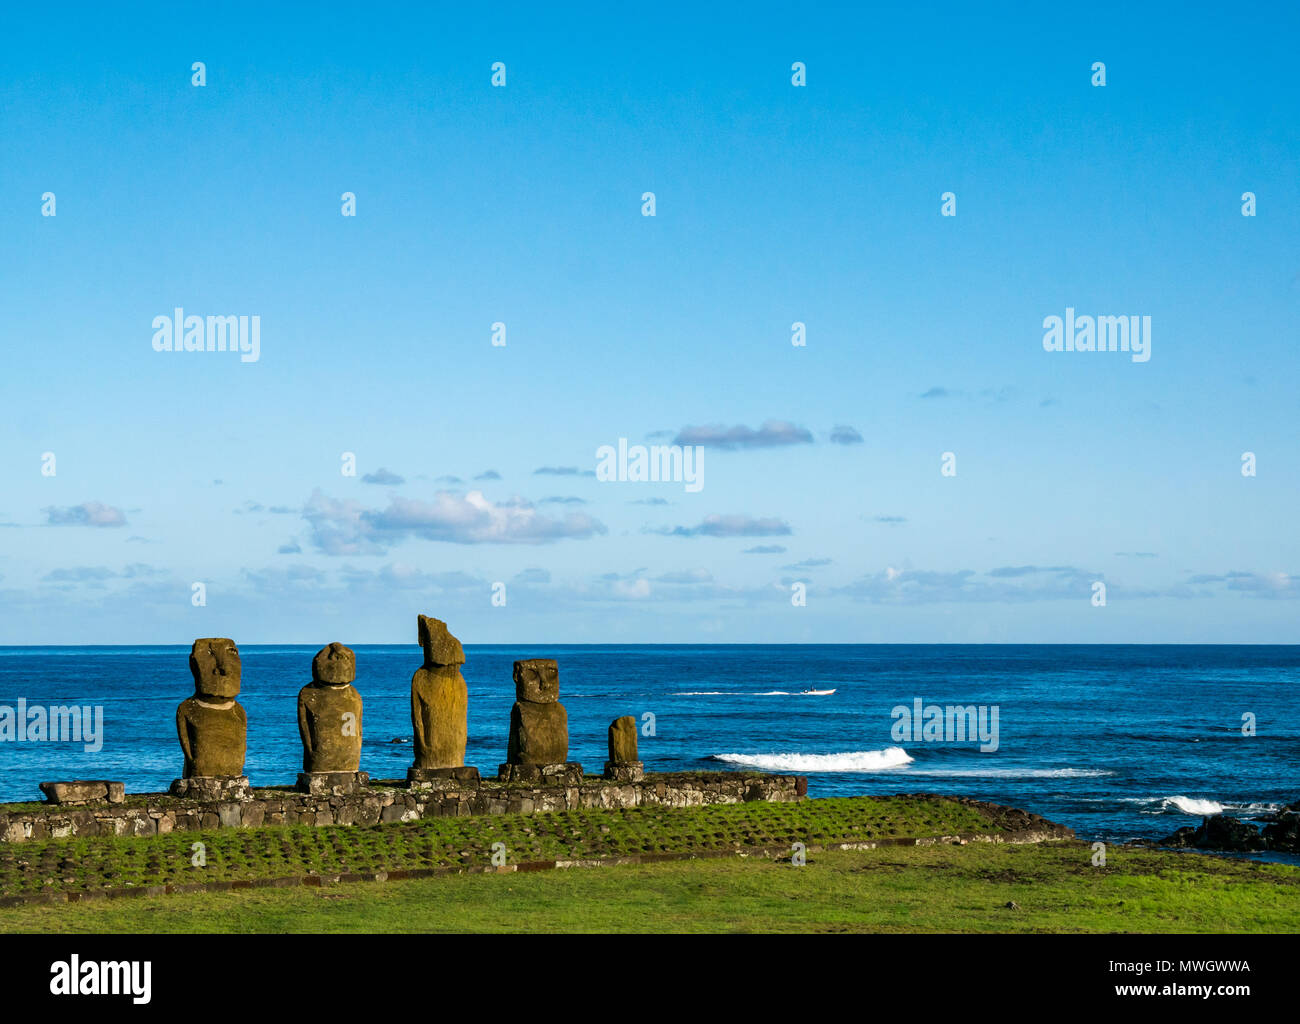 Ahu Vai Ure, Tahai Moai figures, Hanga Roa, Easter Island, Chile Stock Photo